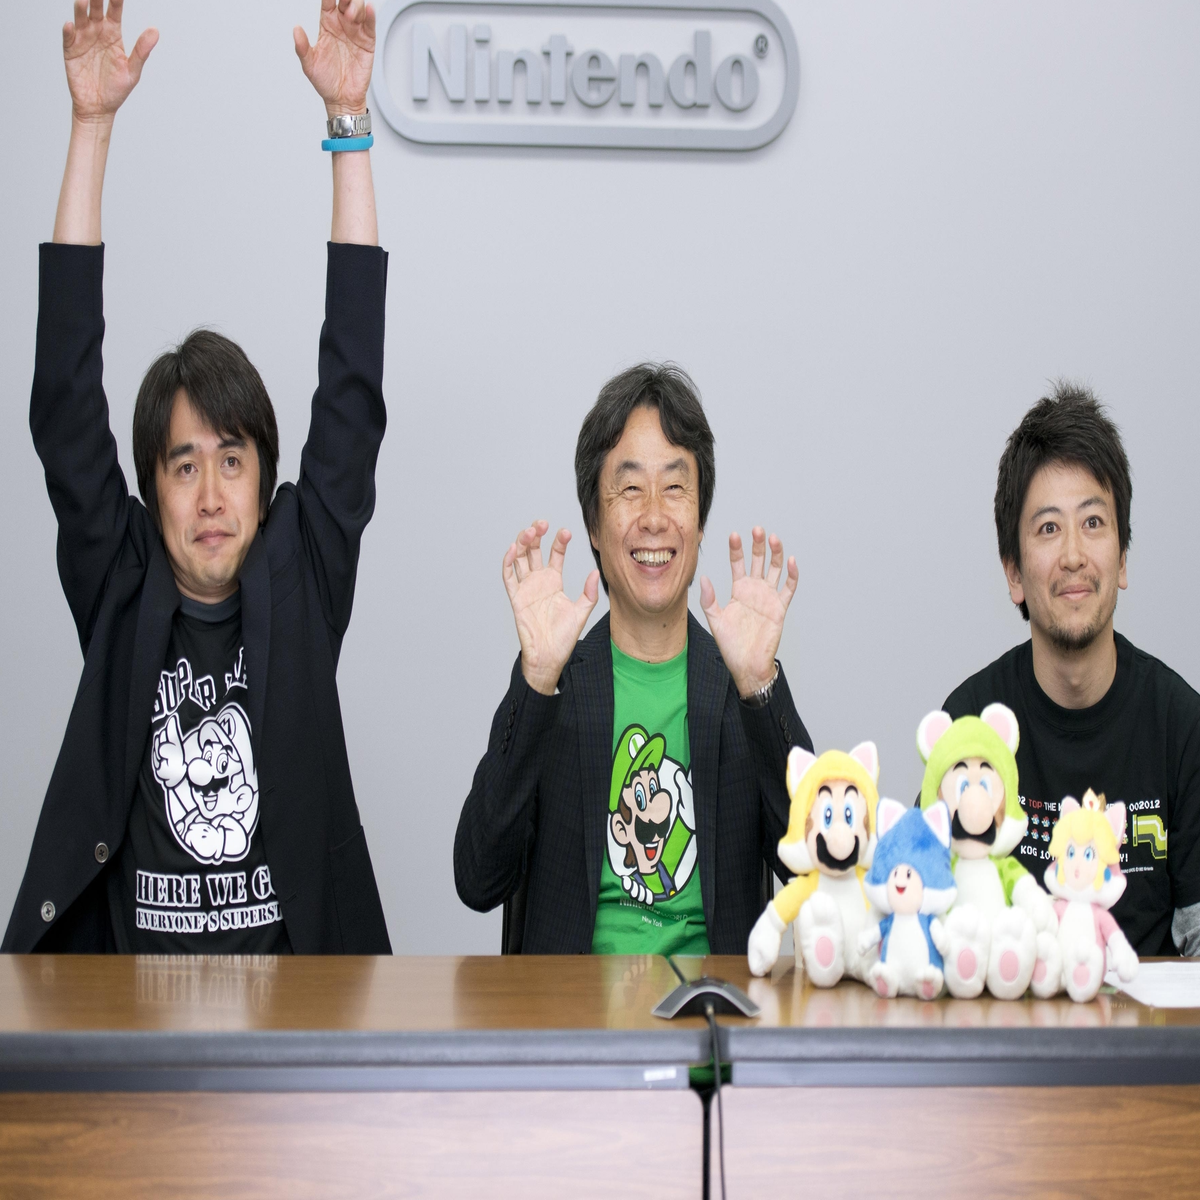 Shigeru Miyamoto, Fantendo - Game Ideas & More